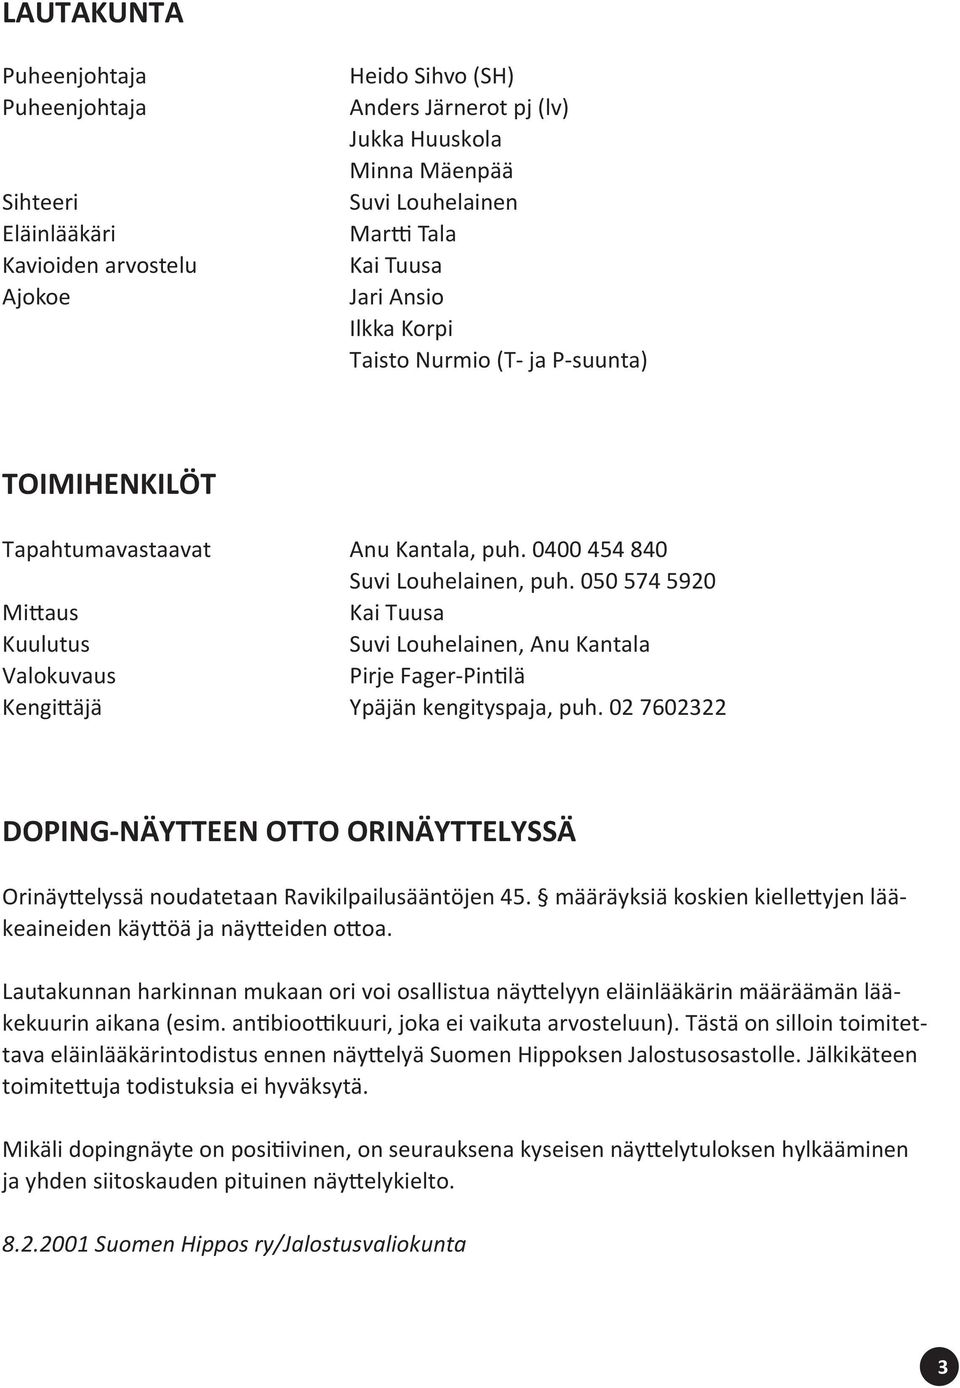 050 574 5920 Mittaus Kai Tuusa Kuulutus Suvi Louhelainen, Anu Kantala Valokuvaus Pirje Fager-Pintilä Kengittäjä Ypäjän kengityspaja, puh.